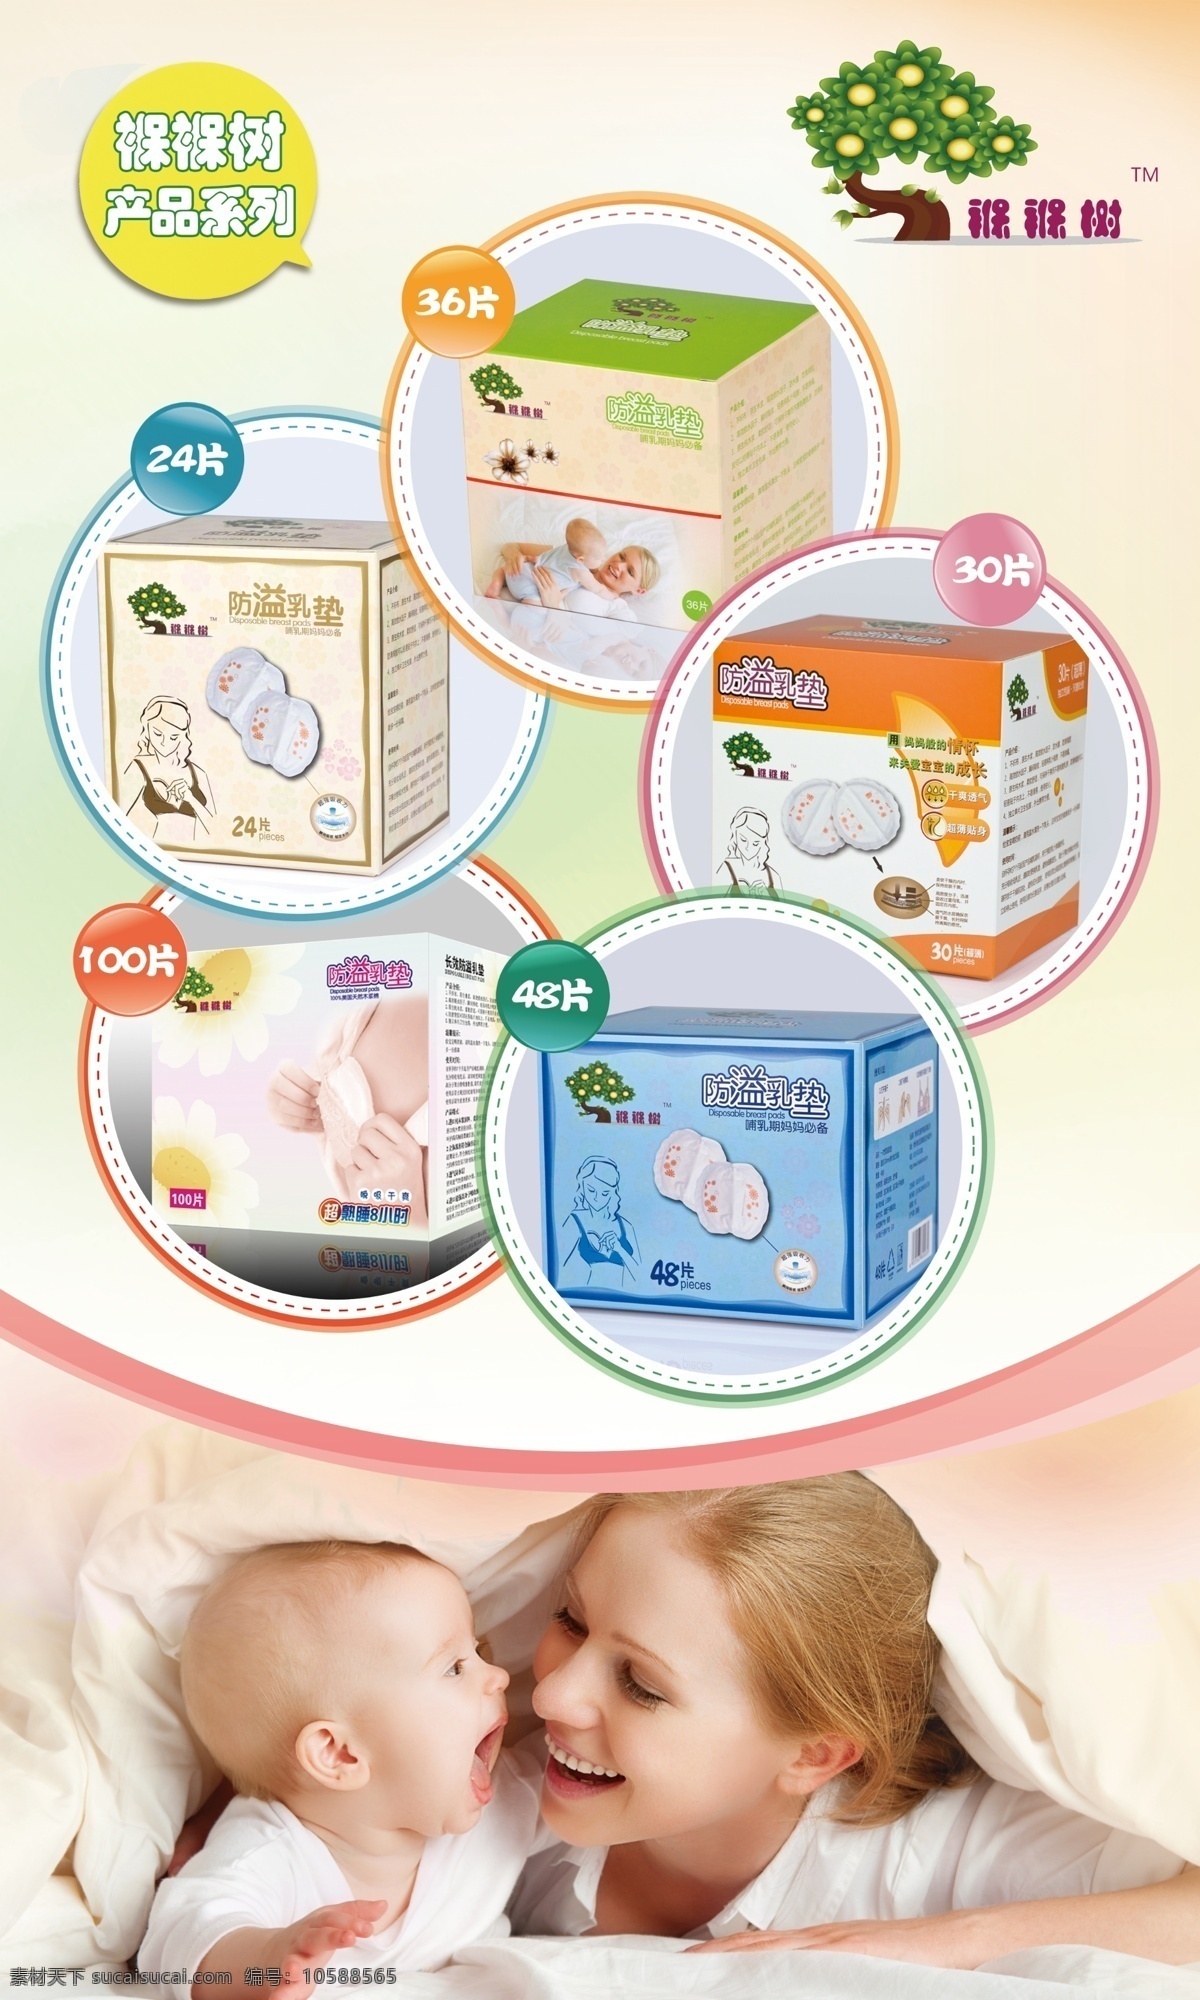 宝宝 小孩 乳垫用品 母婴用品 卫生用品 清洁 海报 写真